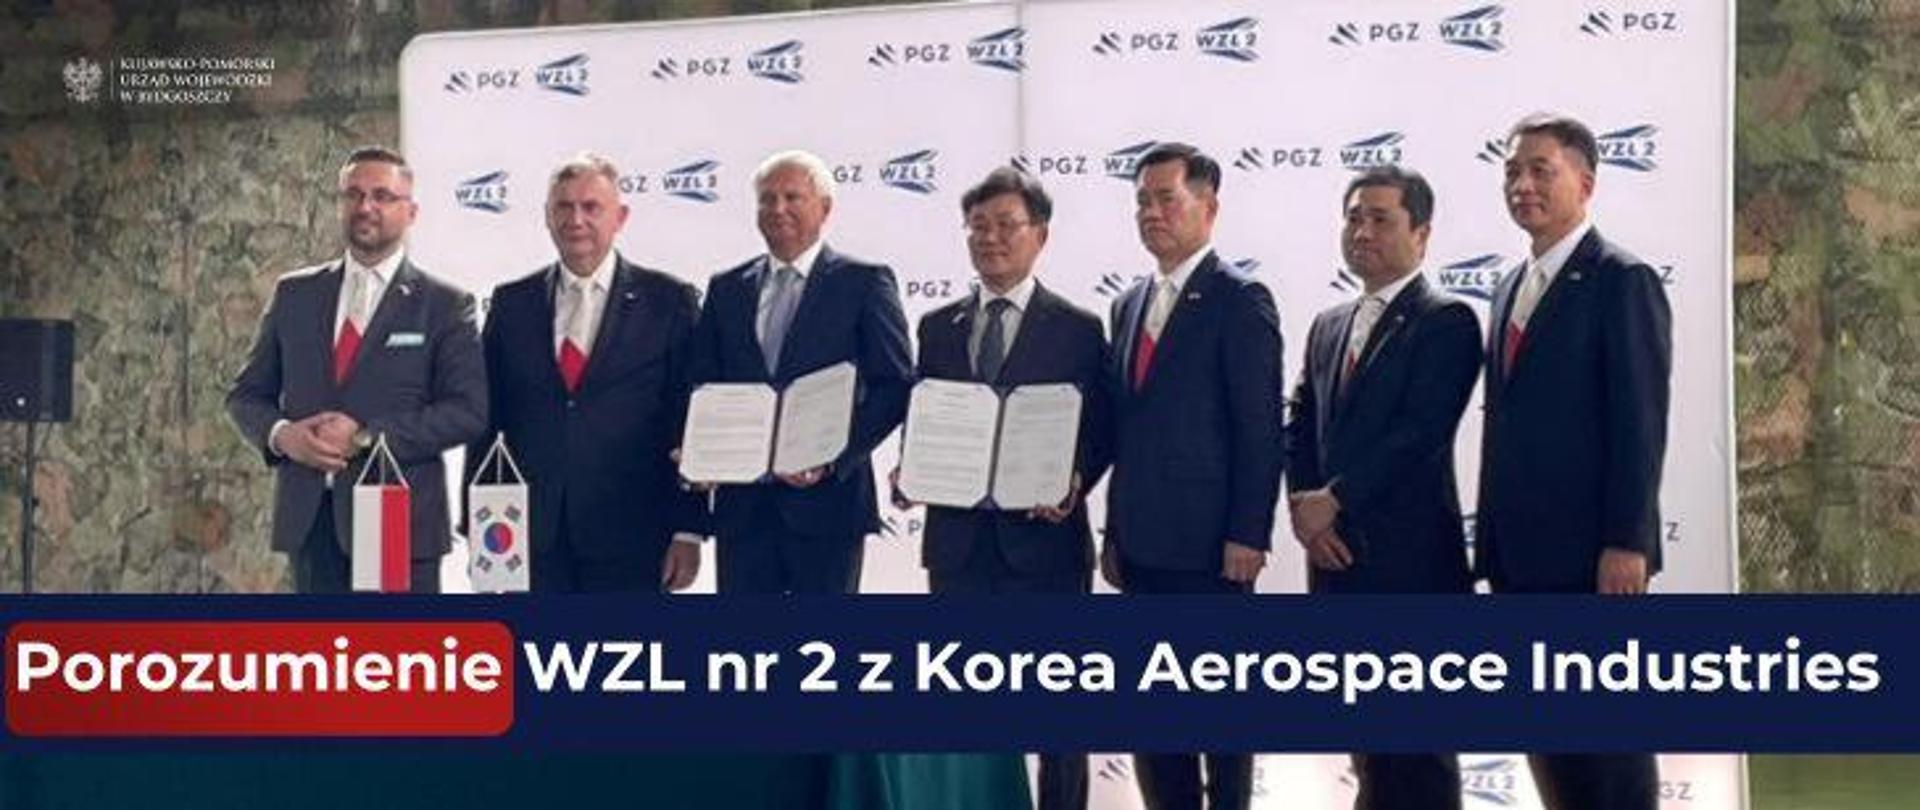 Porozumienie Wojskowych Zakładów Lotniczych Nr 2 z Korea Aerospace Industries